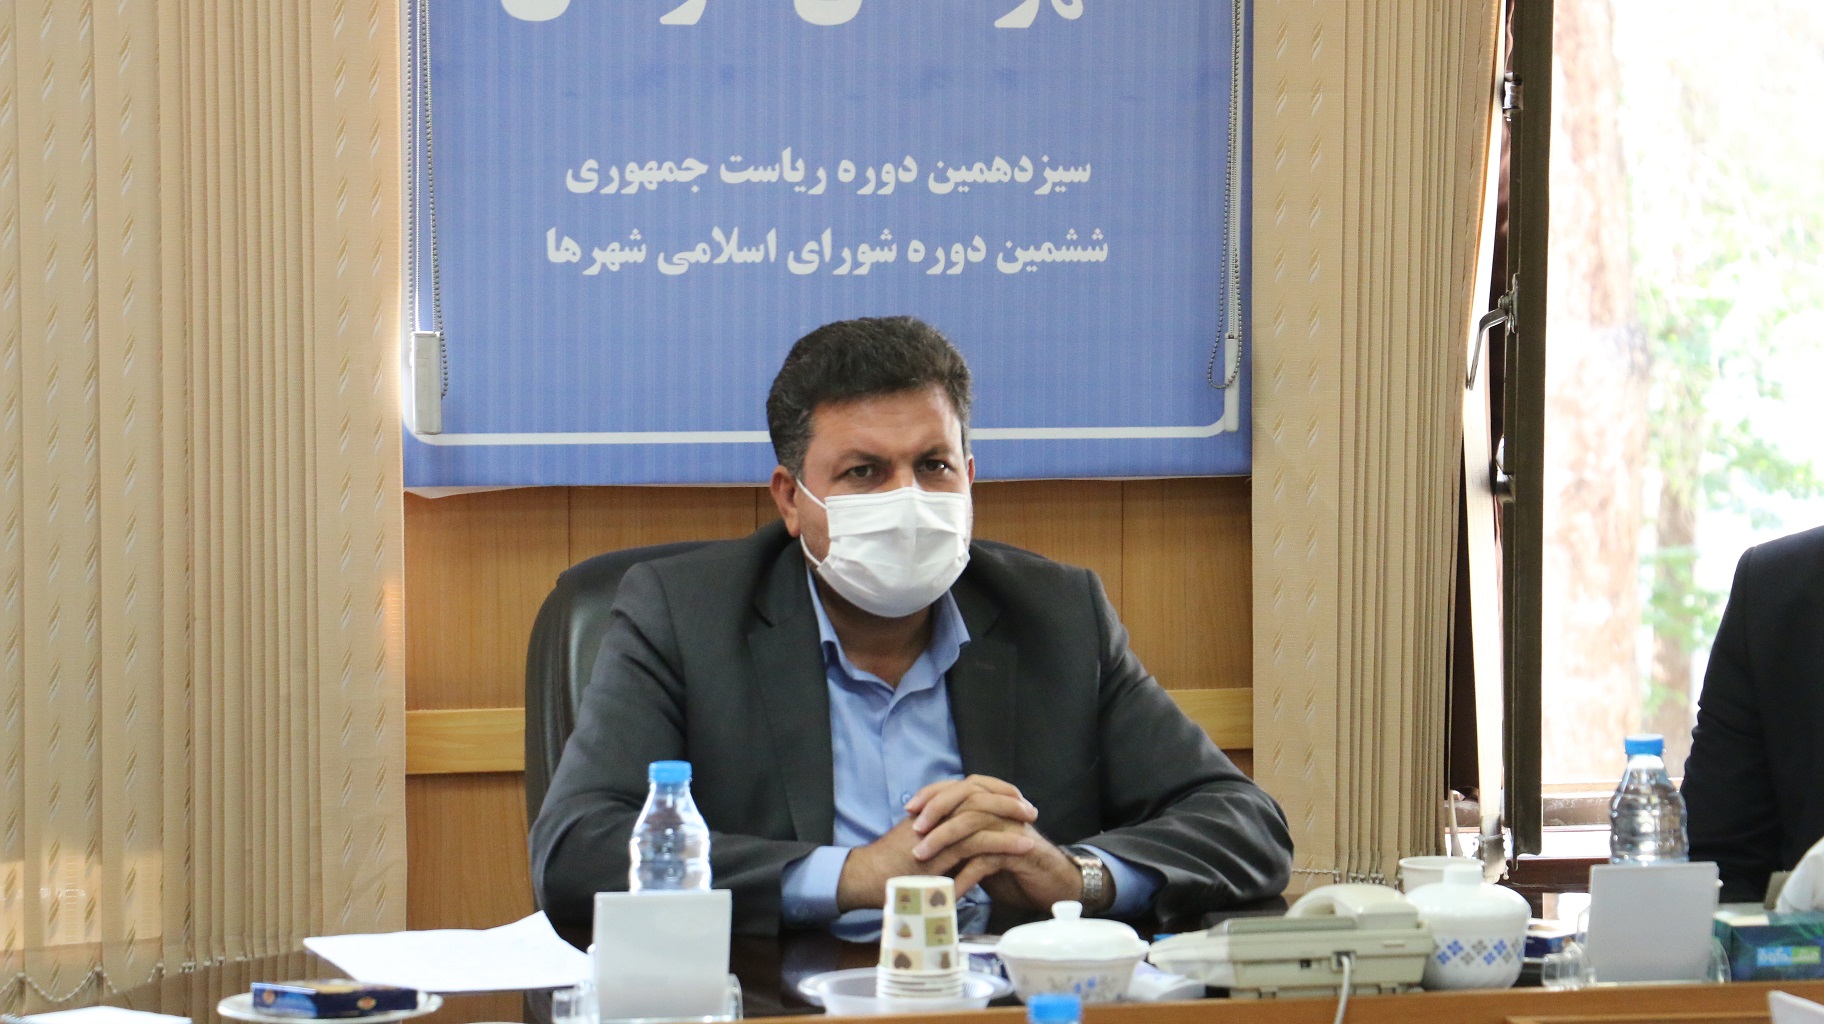  هیات اجرایی صحت انتخابات شورای شهر کرمان را تایید کرد 